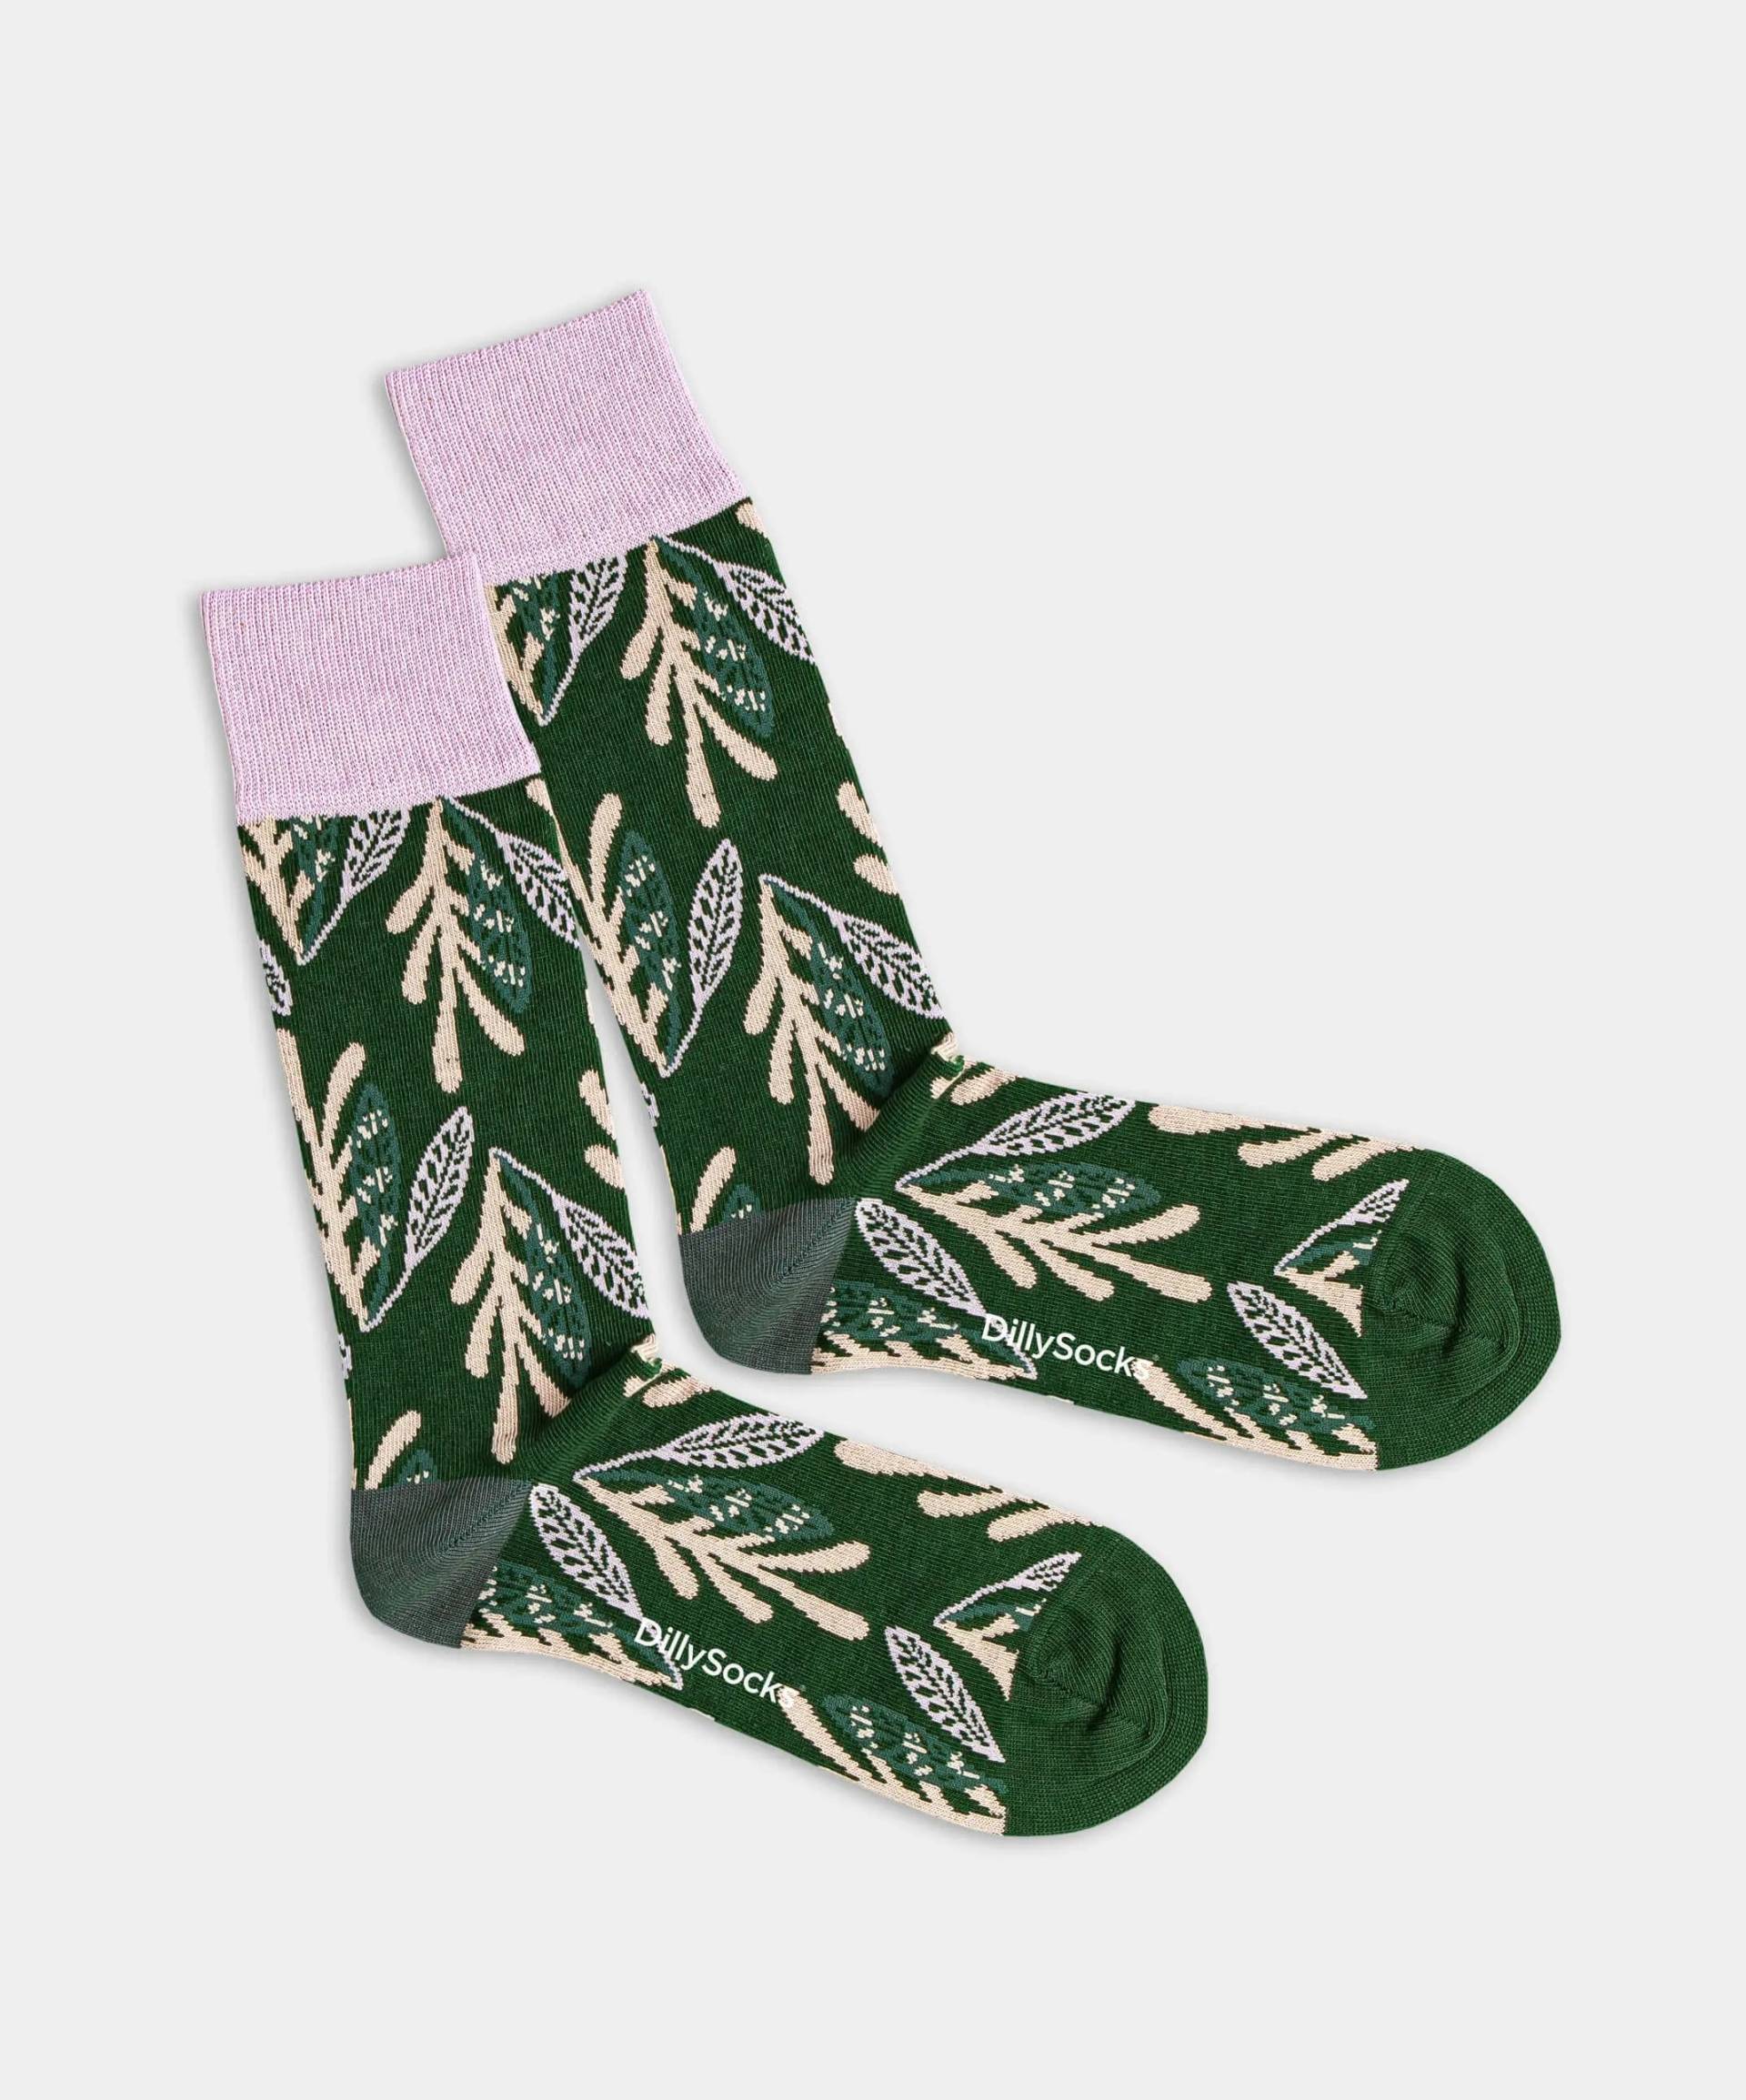 - Socken in Grün mit Pflanze Blätter Motiv/Muster von DillySocks